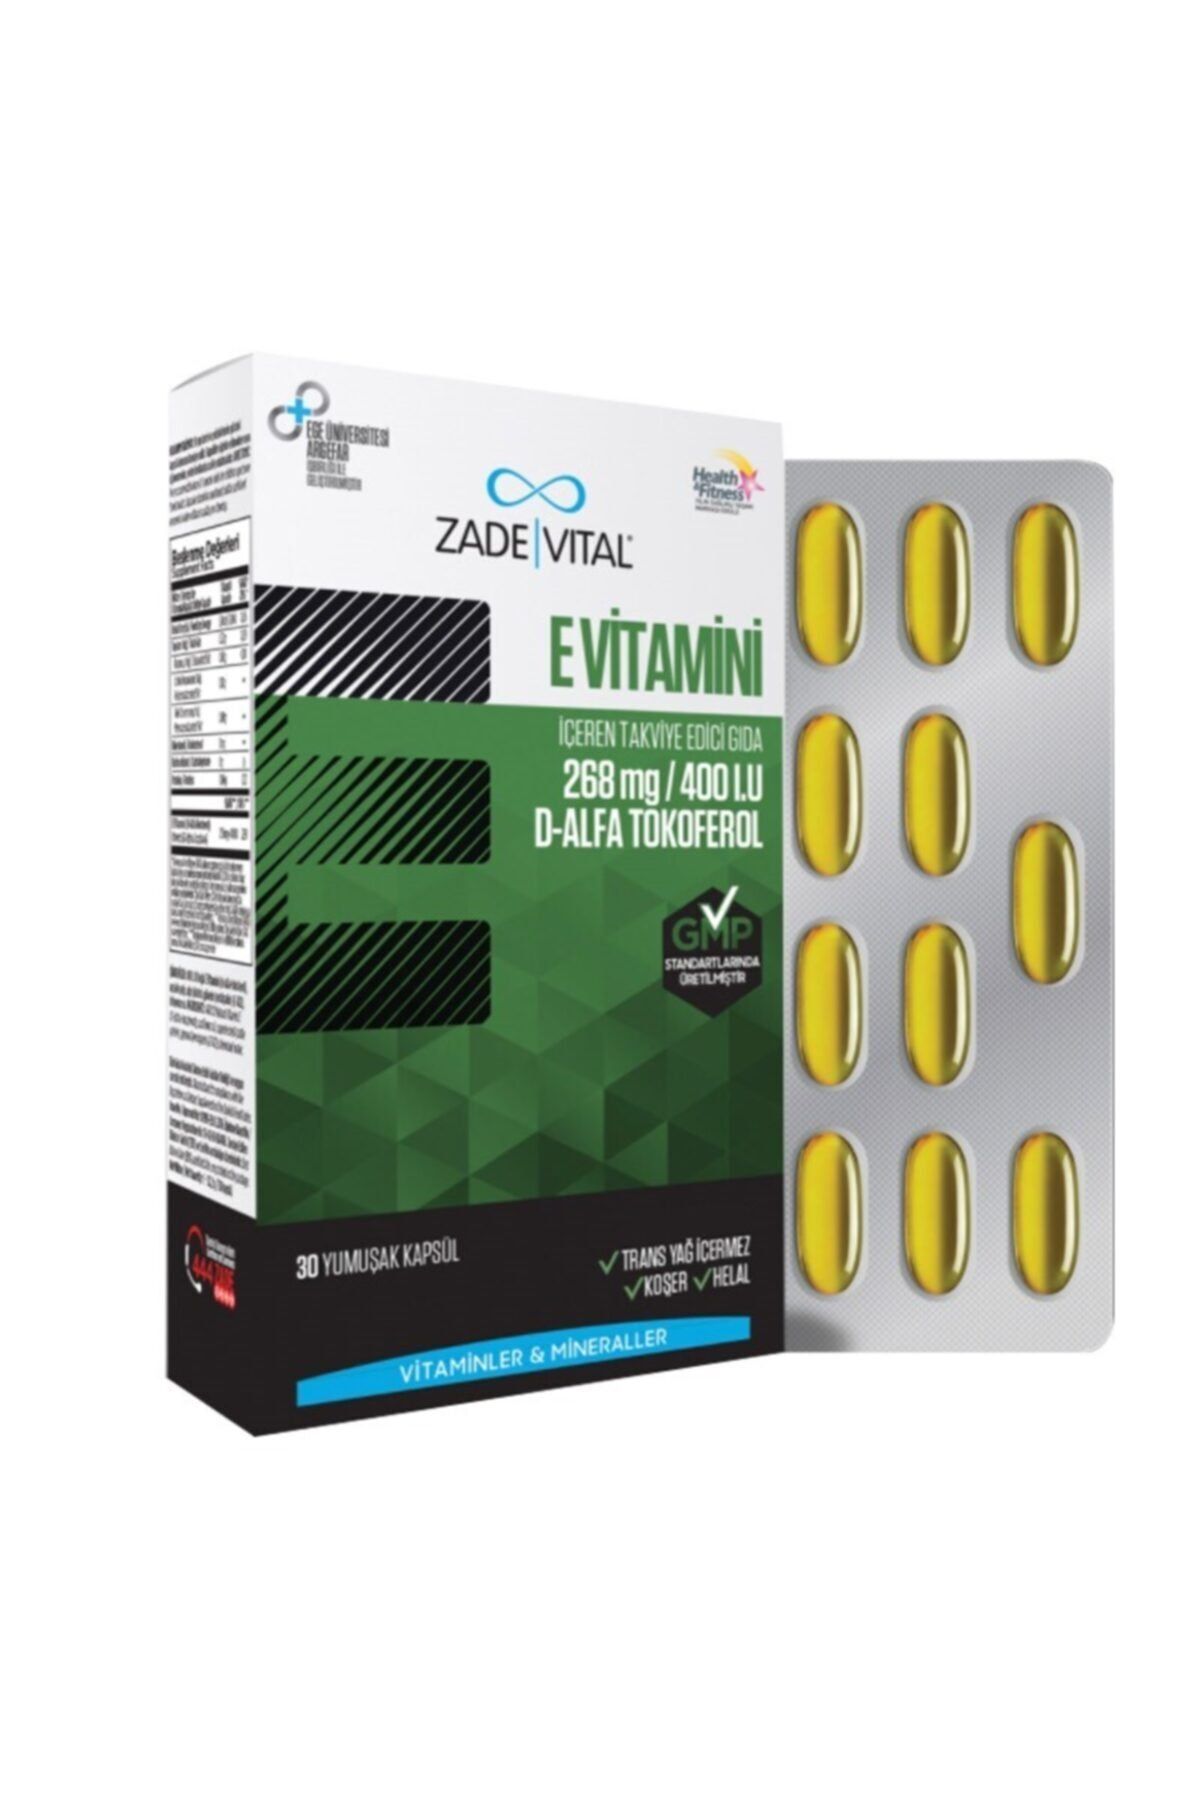 Zade Vital E Vitamini Içeren Takviye Edici Gıda 30 Kapsül 400ıu